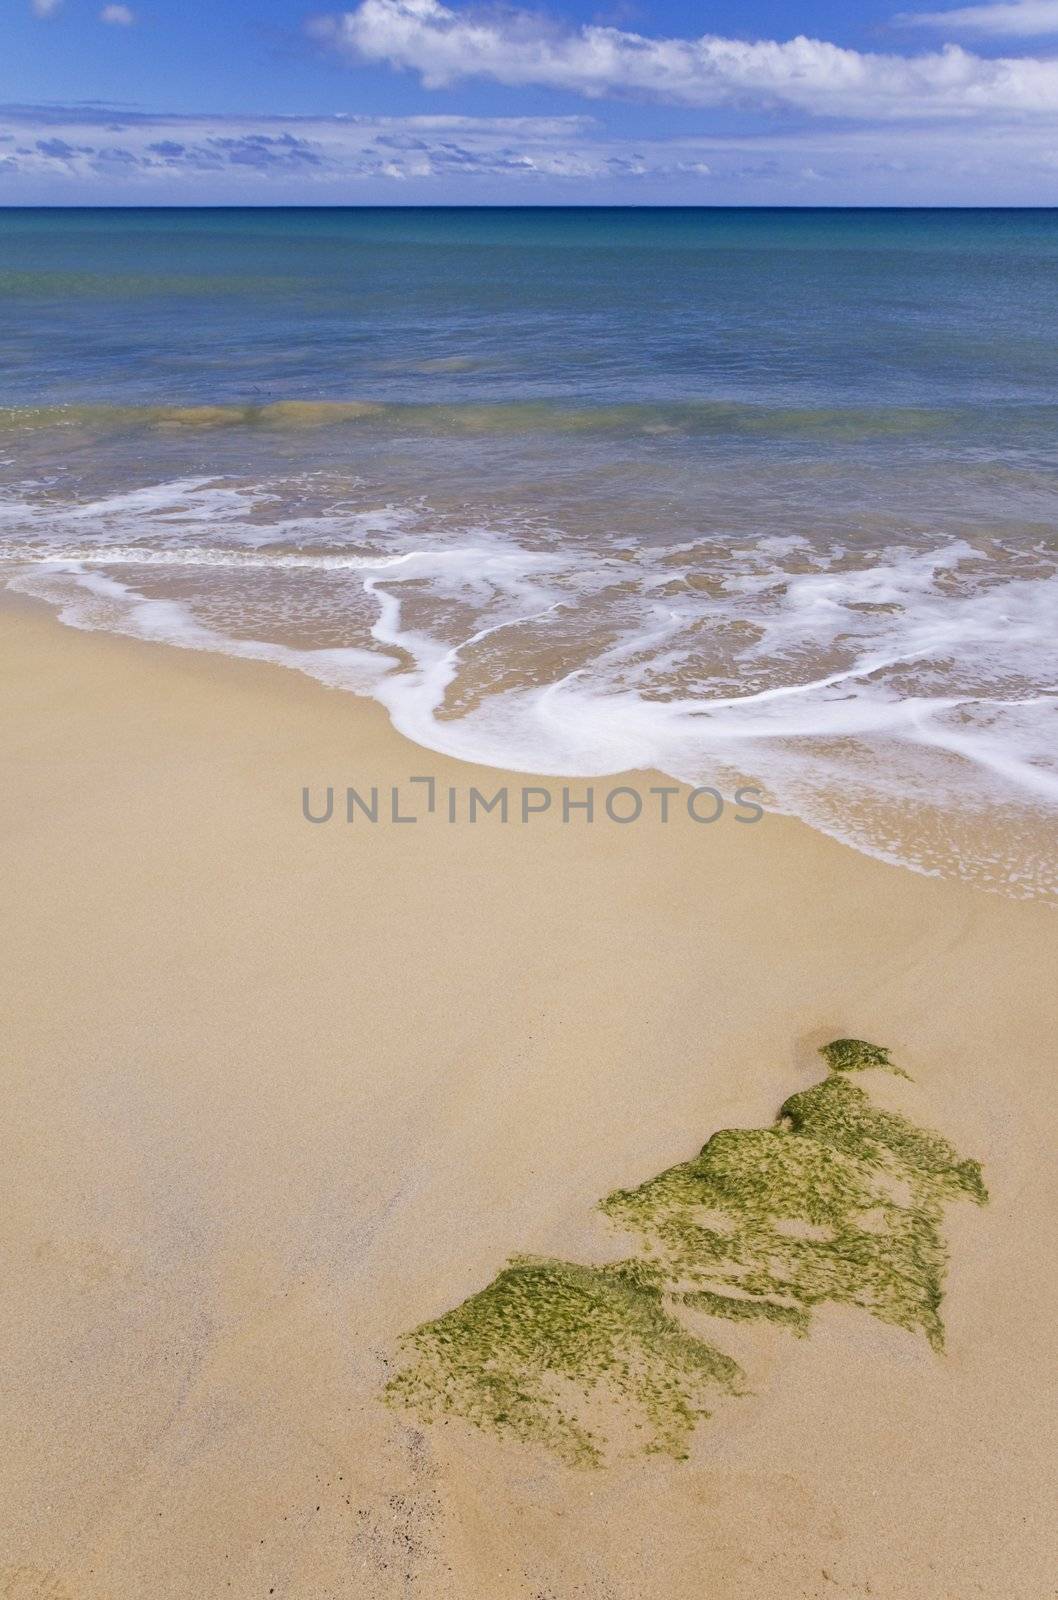 Sand on the beach by Gbuglok